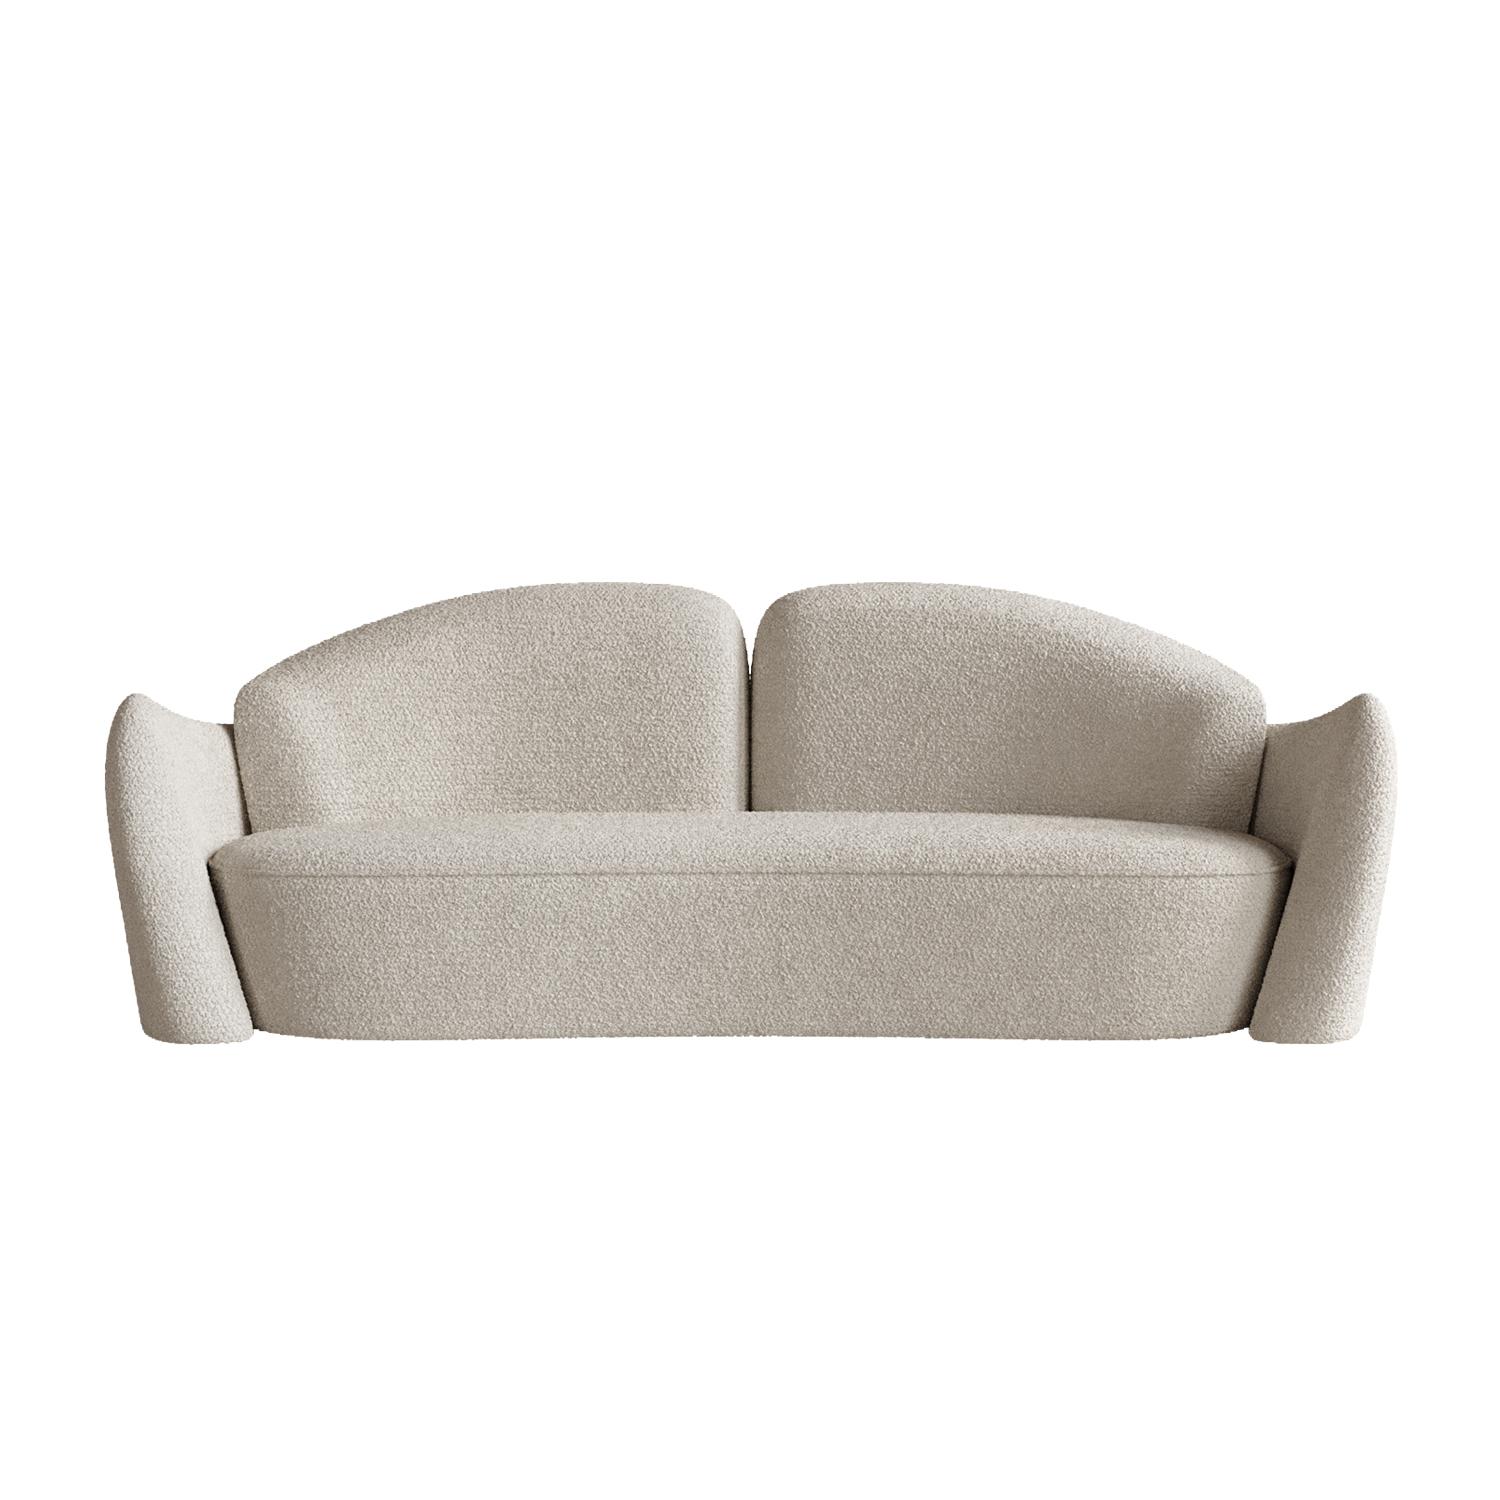 Chaise à mémoire de forme blanche et beige par Plyus Design
Dimensions : D 90 x L 240 x H 85 cm
Matériaux :  Bois, mousse HR, ouate de polyester, tissu d'ameublement

Canapé 